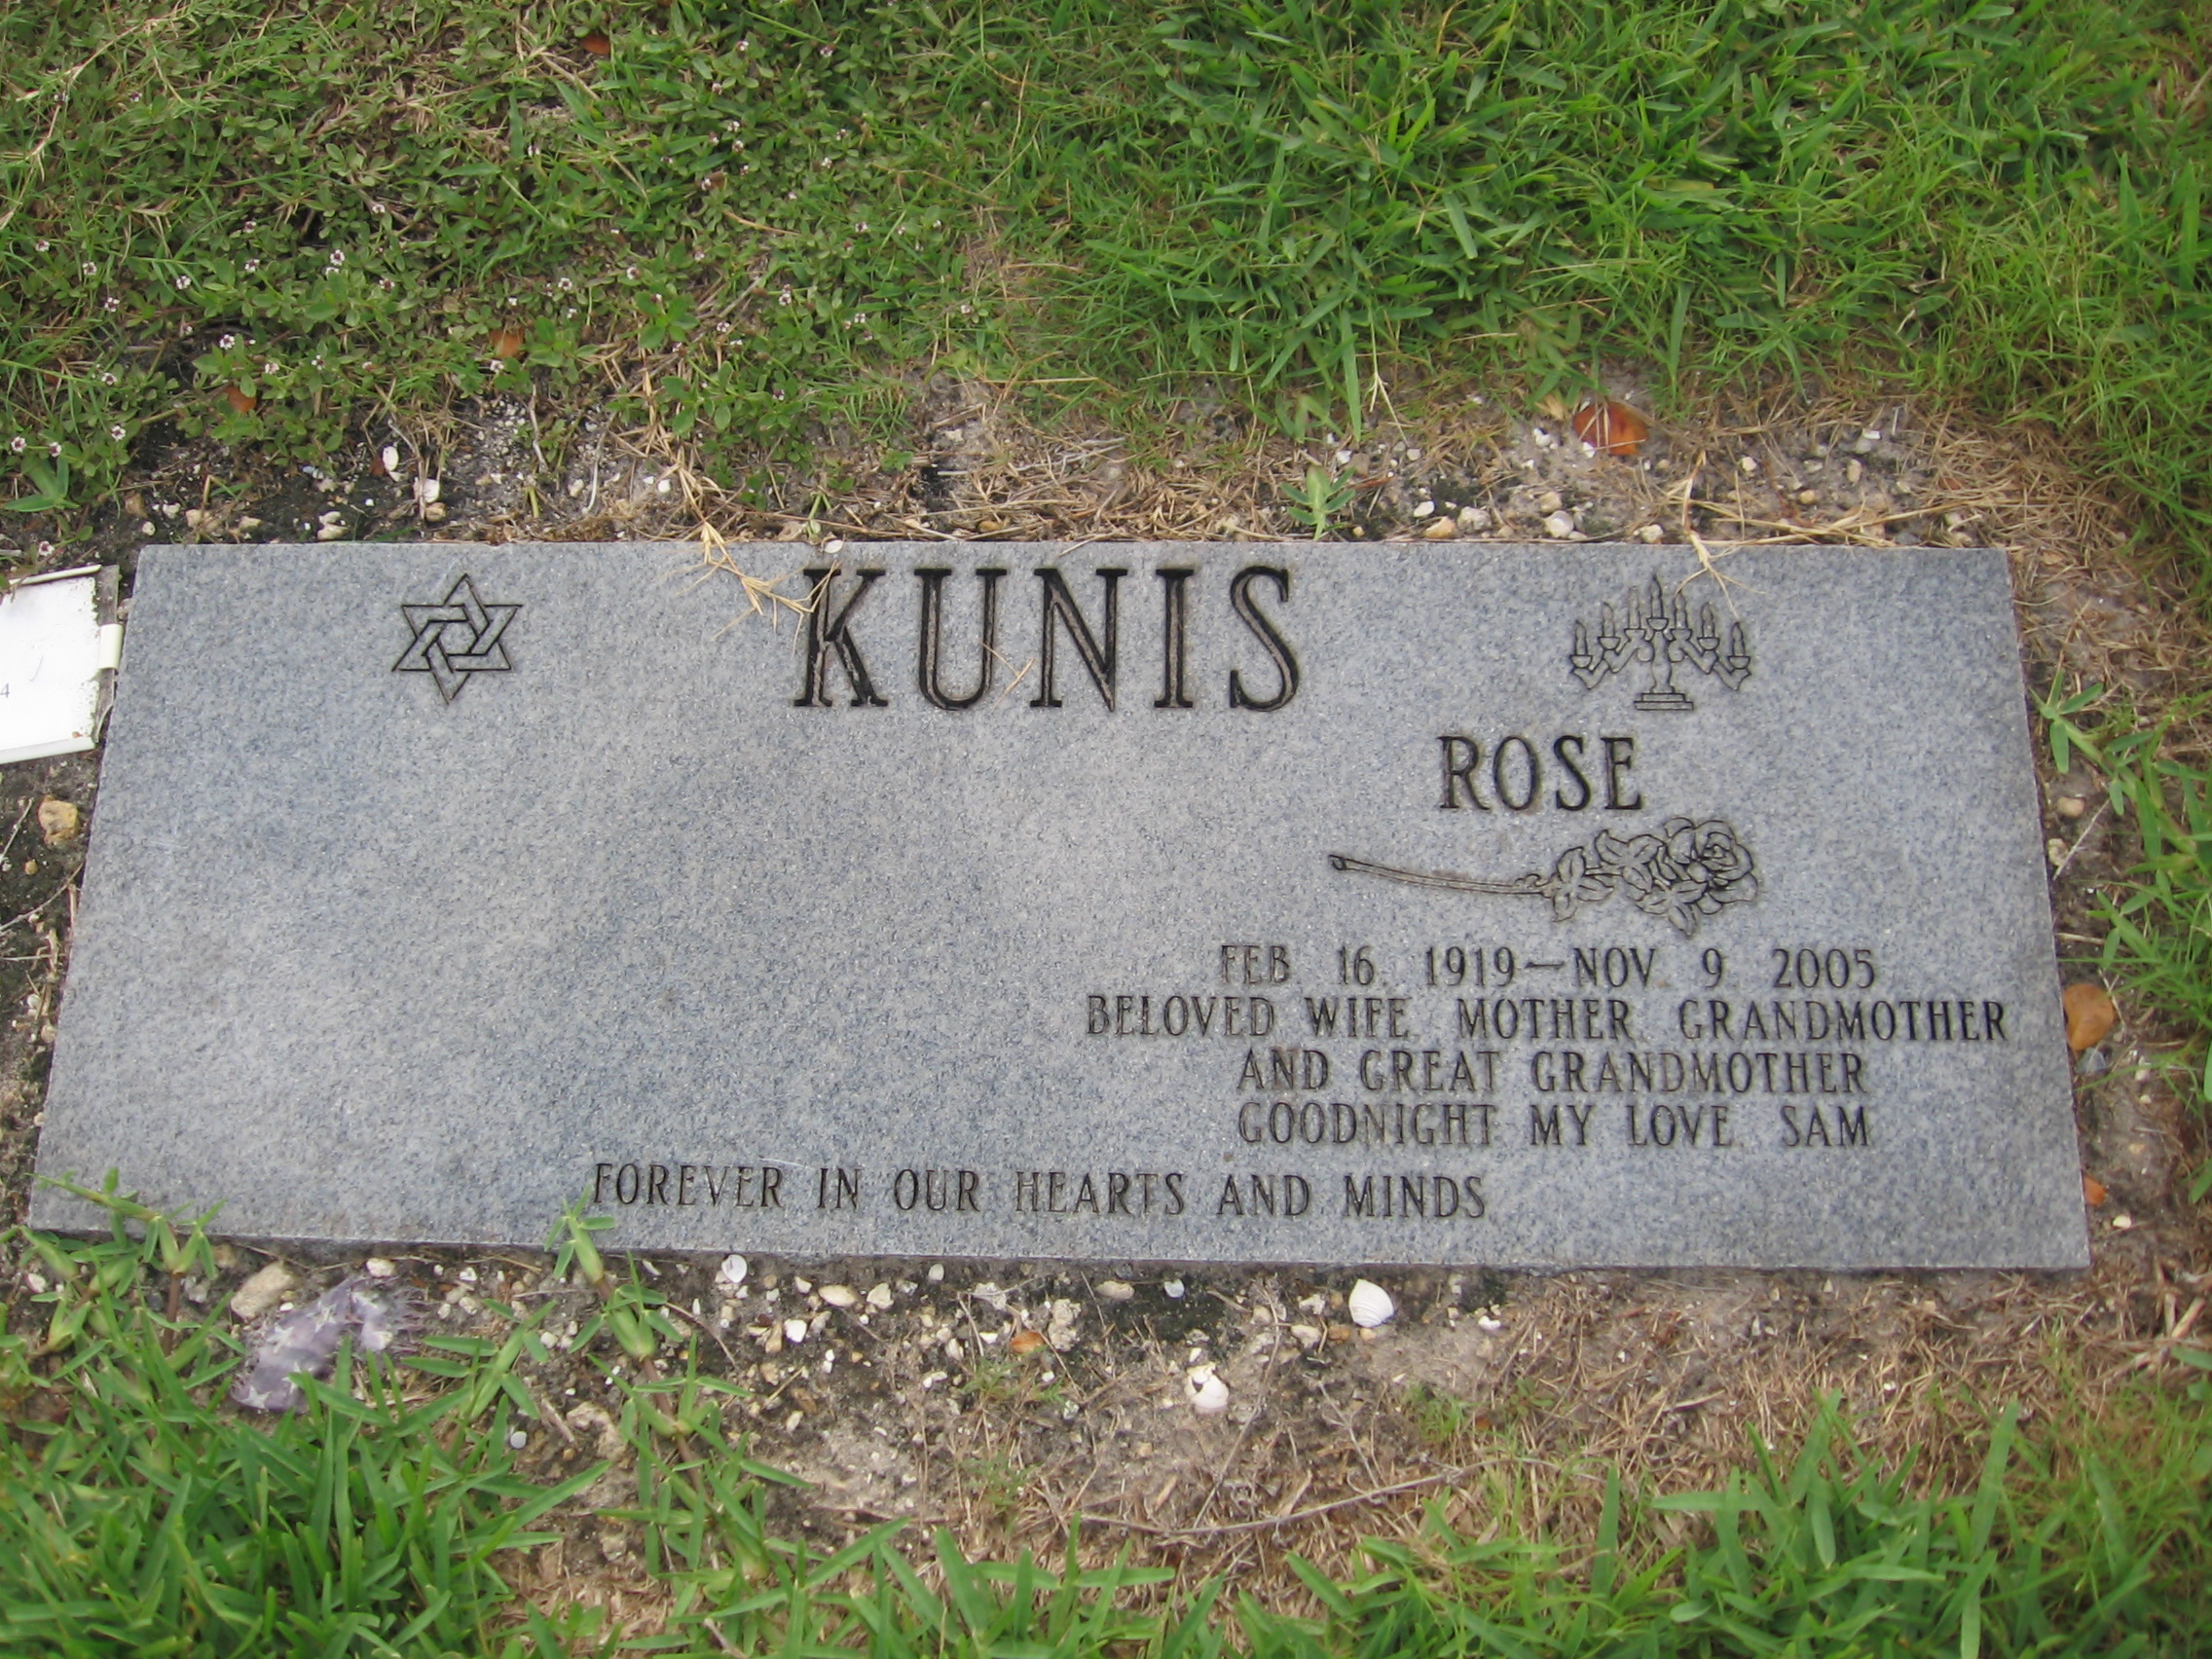 Rose Kunis